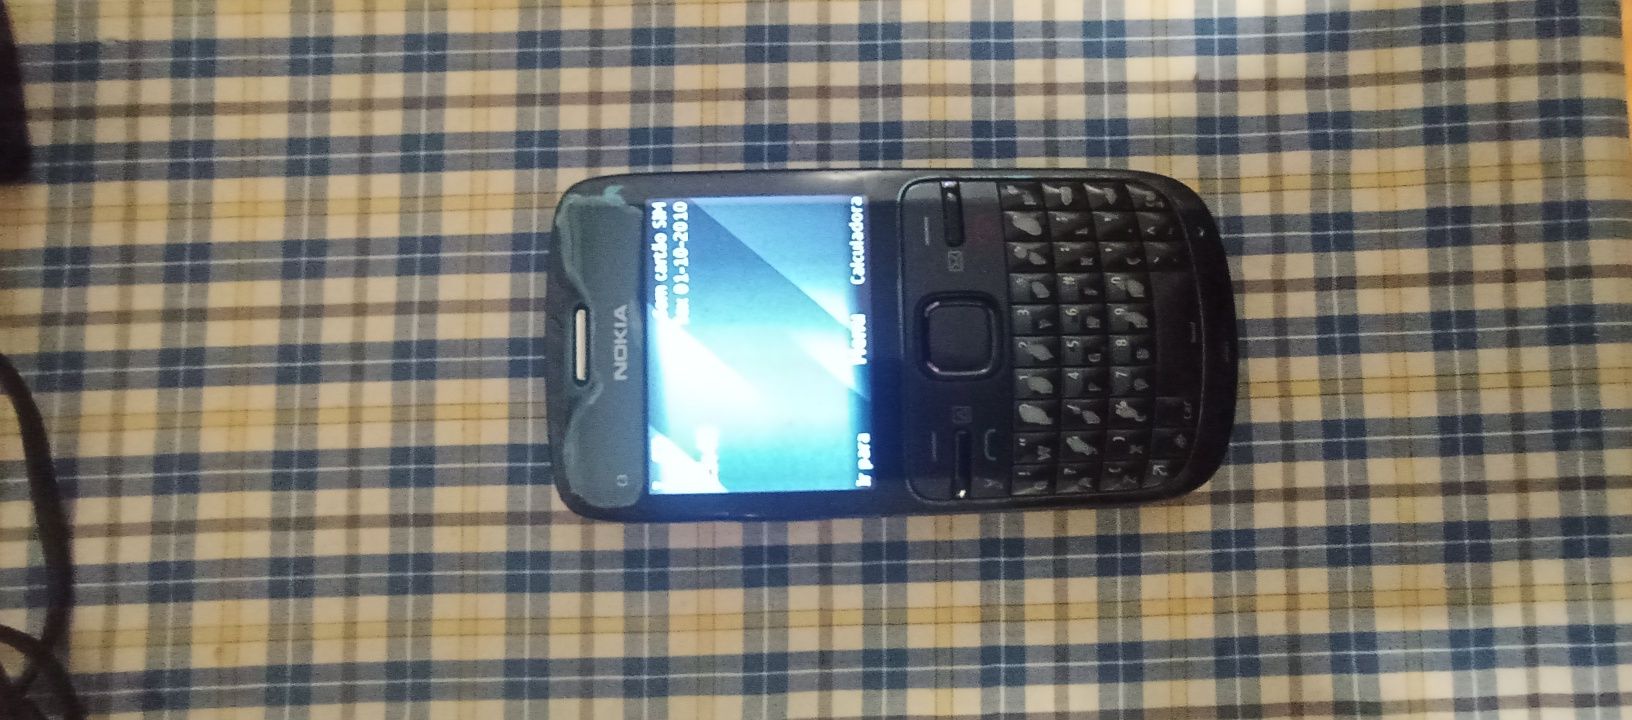 Nokia c3 com carregador